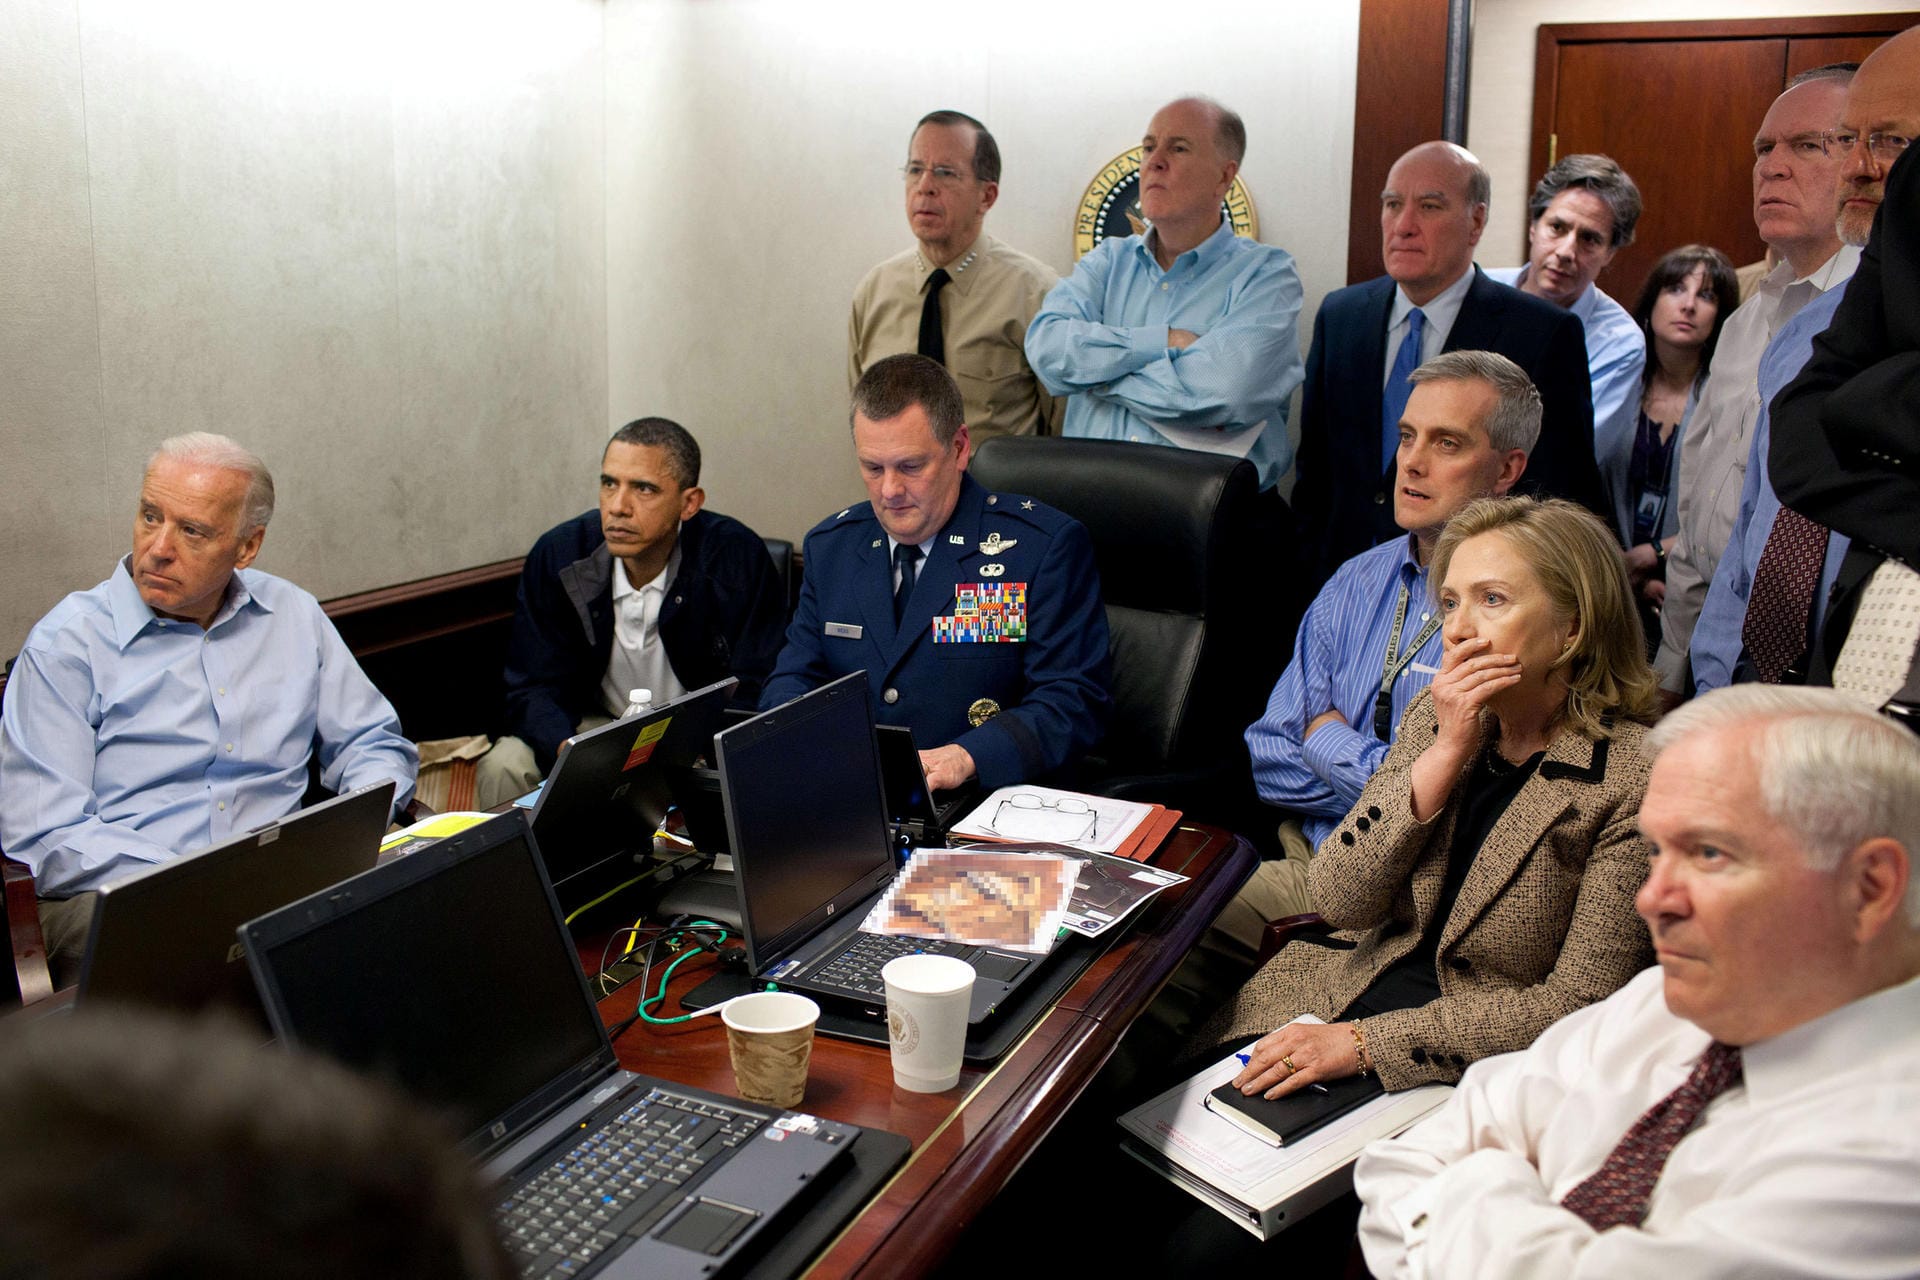 1. Mai 2011: US-Spezialkräfte töten den meistgesuchten Terroristen der Welt, al-Qaida-Chef Osama bin Laden, in seinem Versteck im pakistanischen Abbottabad. US-Präsident Barack Obama, sein Vize Joe Biden und weitere Mitglieder des Nationalen Sicherheitsrats der USA verfolgen die Entwicklungen im Situation Room des Weißen Hauses.